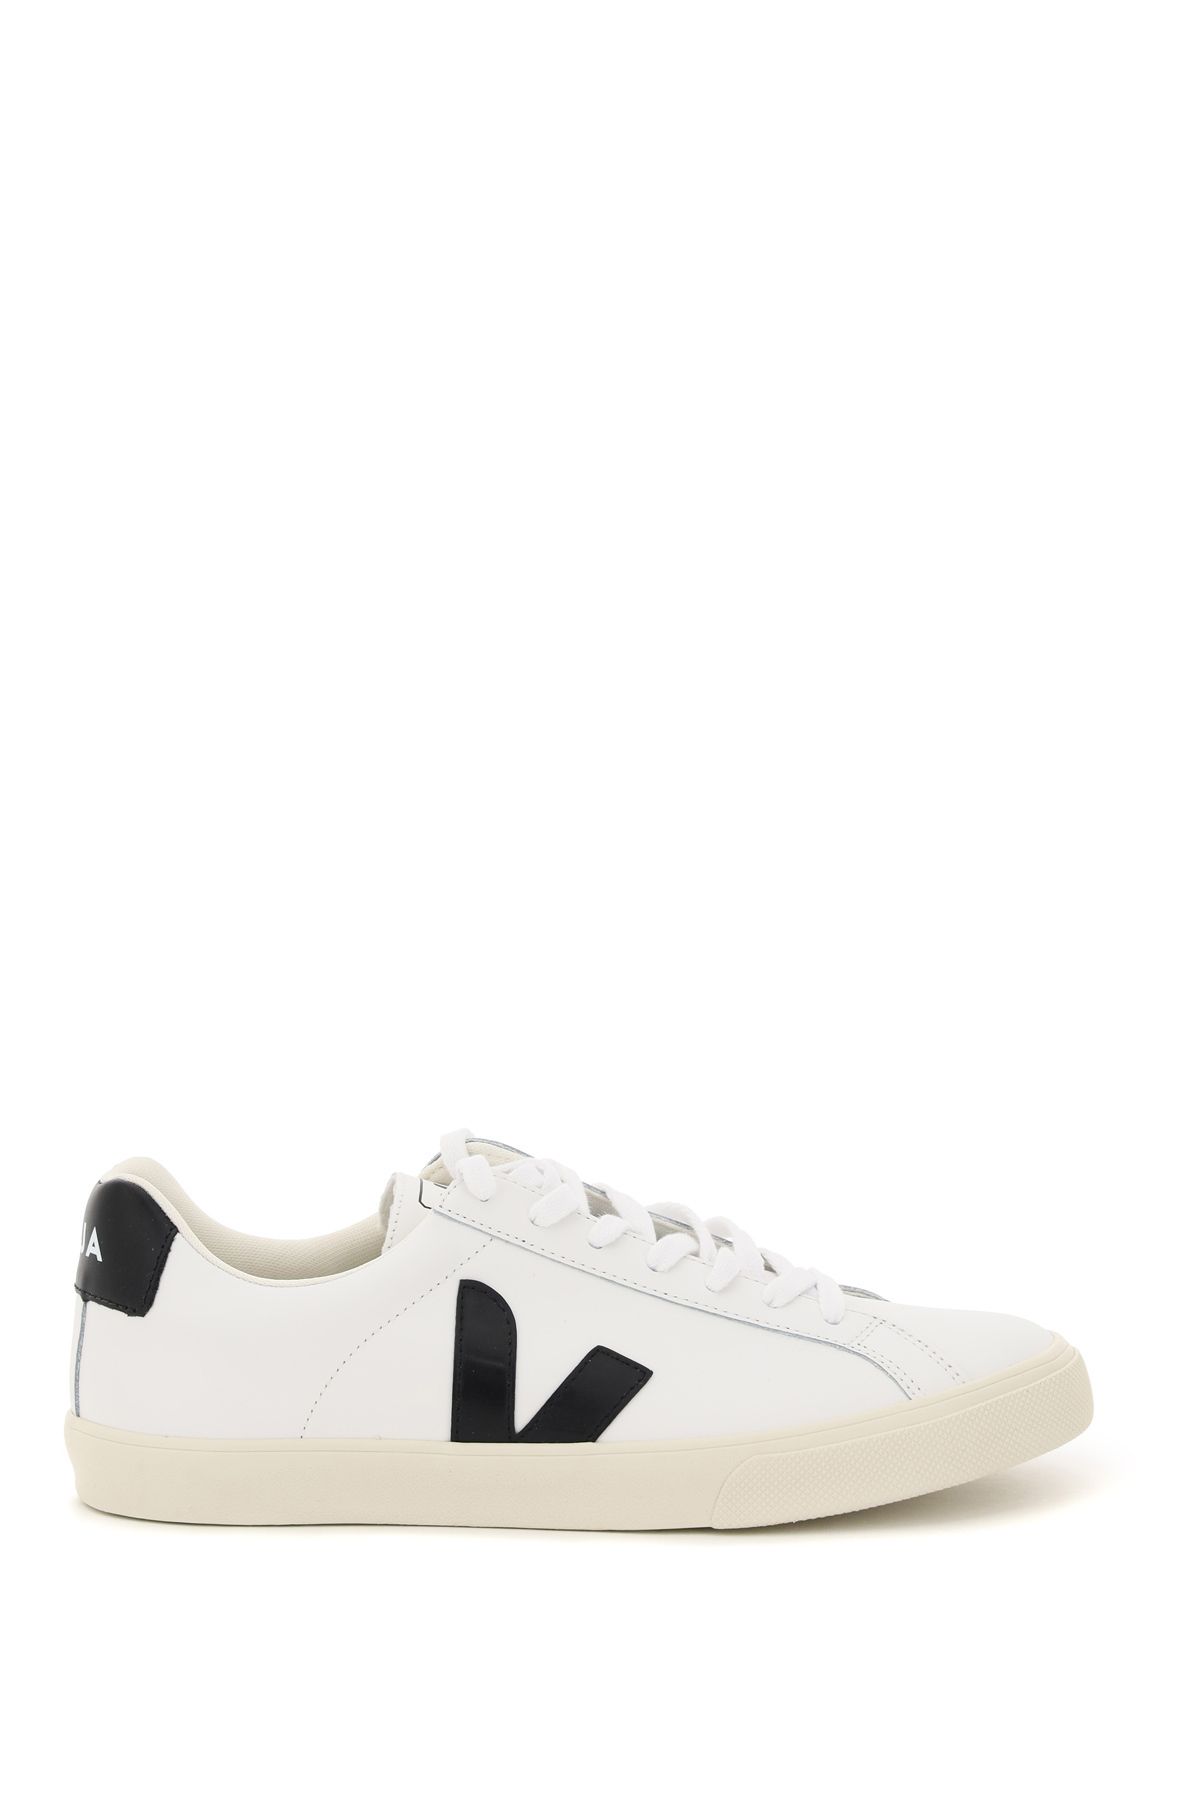 Shop Veja Esplar Leather Sneakers In White